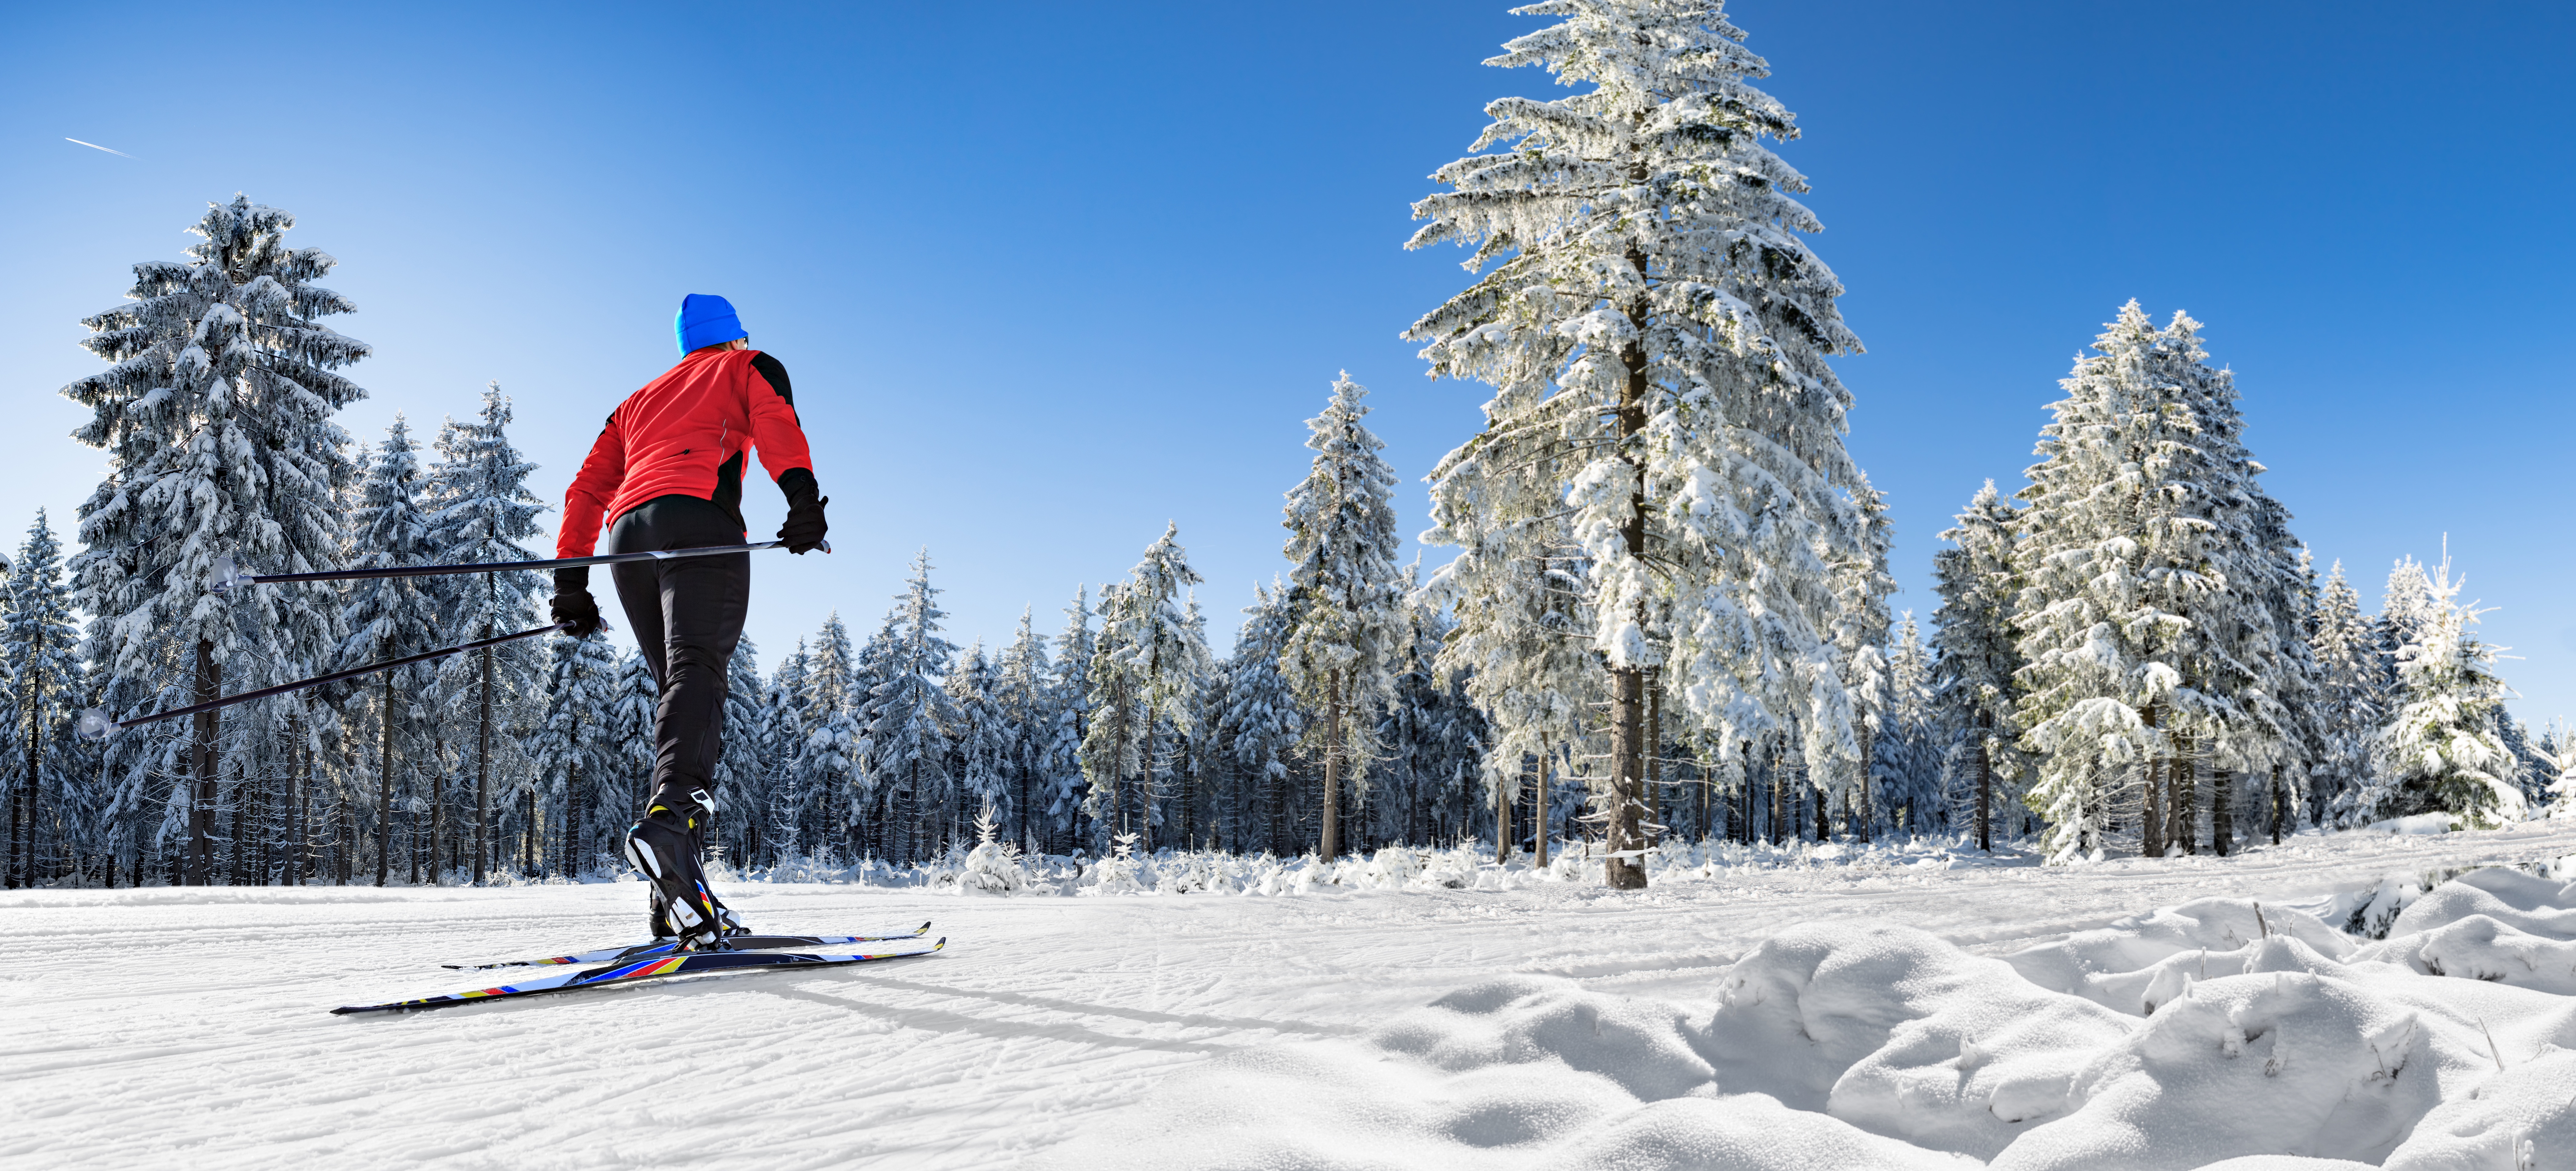 Skiing Snow Tree Winter 8446x3840